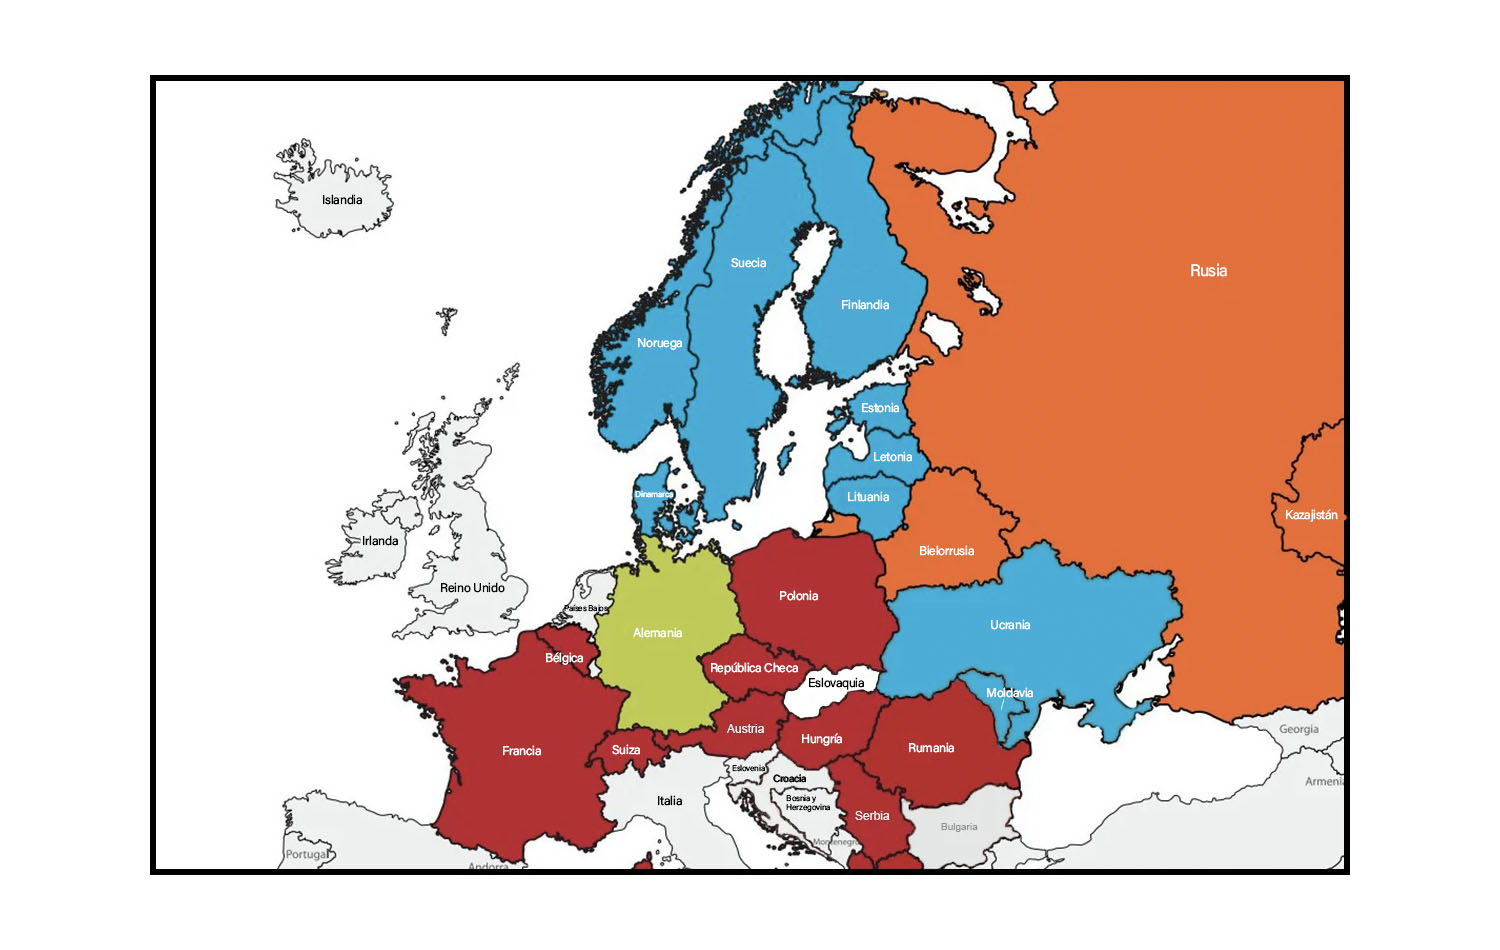 Este extracto de un mapa que detalla las conferencias centrales en Europa muestra la Conferencia Central de Europa Central y Meridional (en rojo), la Conferencia Central de Alemania (en verde) y la Conferencia Central de Europa del Norte y Eurasia, que contiene el Área Episcopal de Eurasia y el Área Episcopal Nórdica y Báltica (en naranja y azul respectivamente). Mapa original cortesía de UMC.org; editado por Noticias MU.